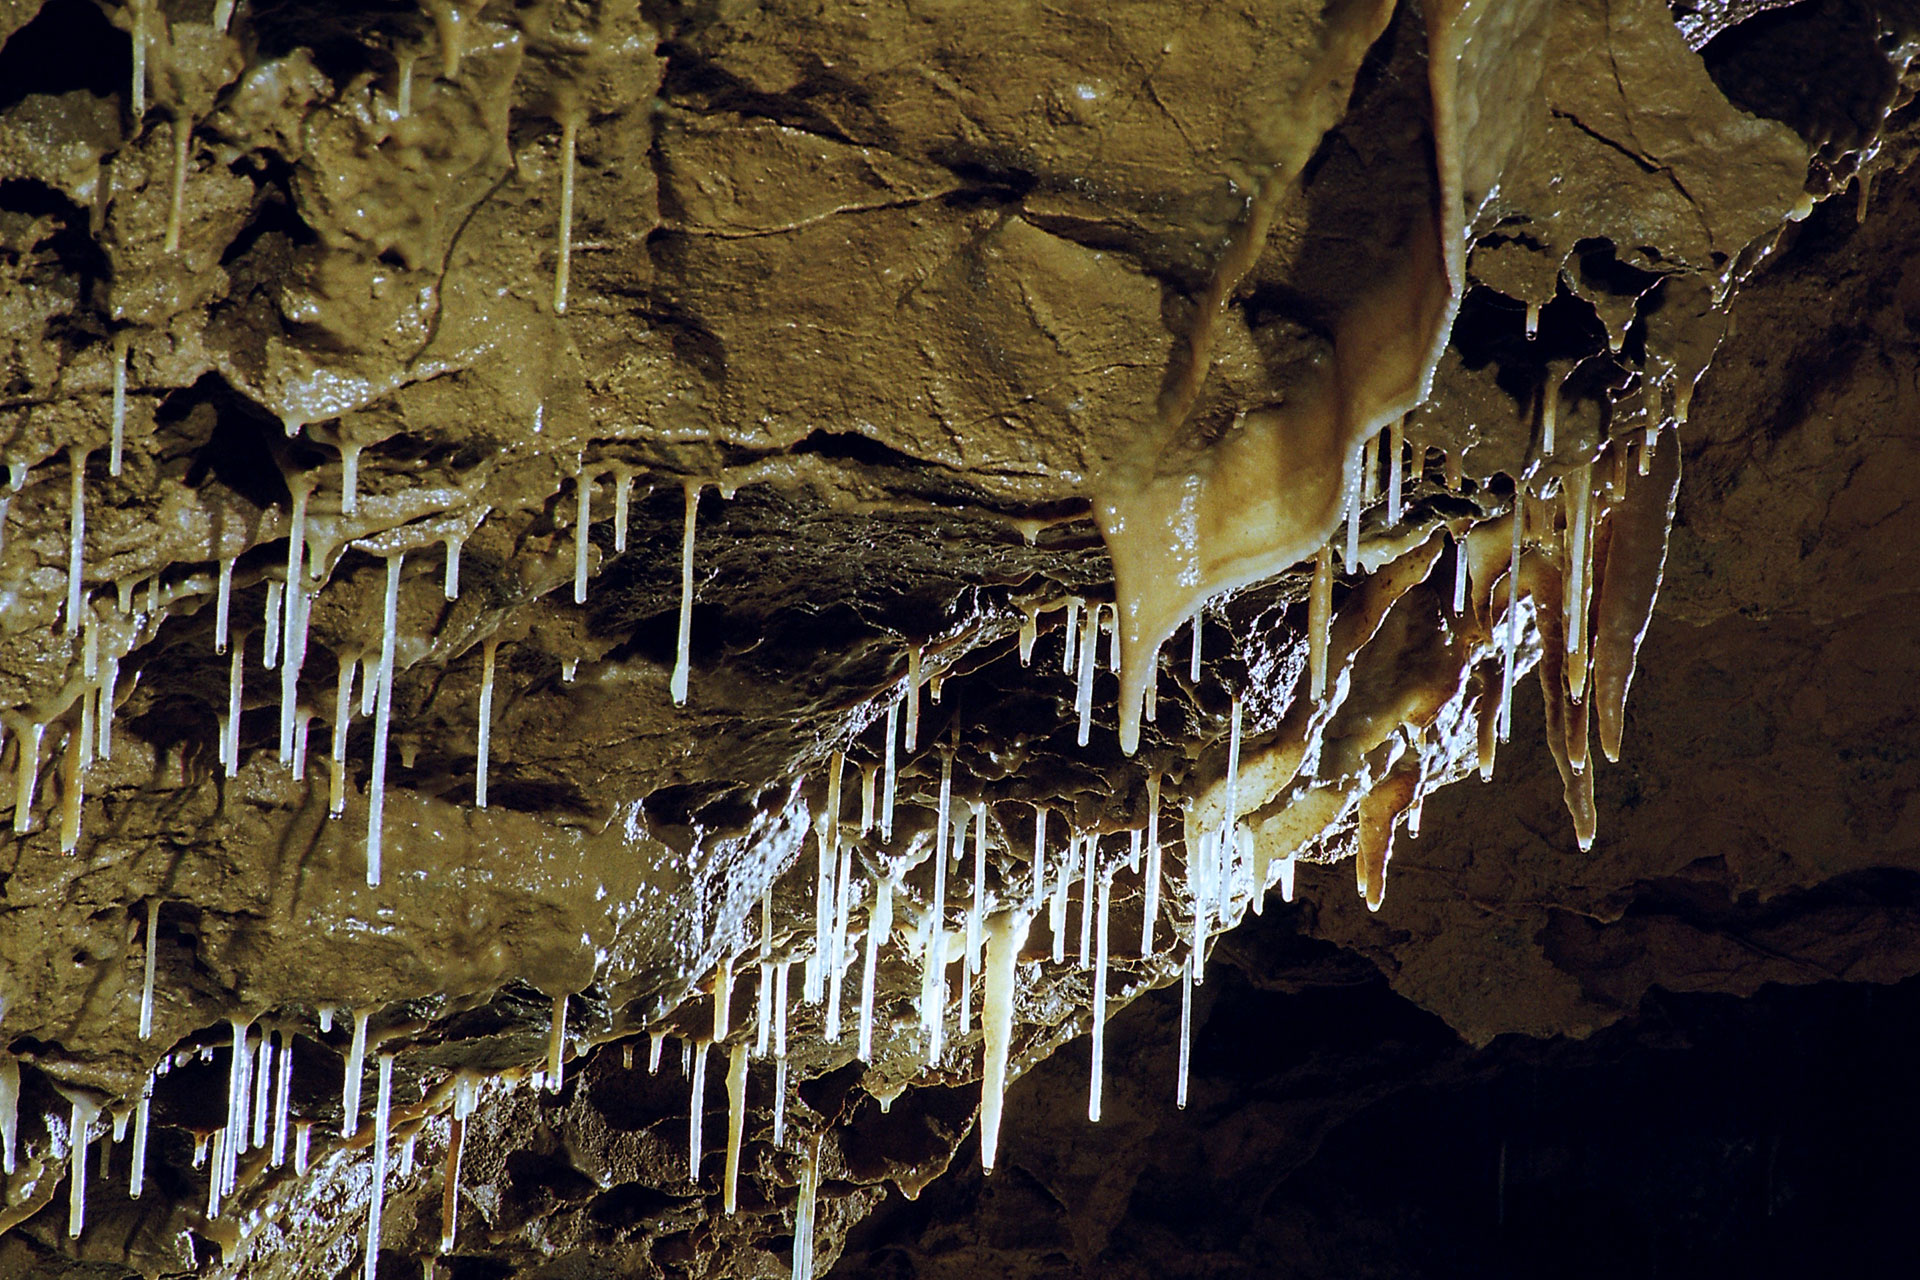 Grotte de Comblain - spectacle naturel - passionnant - Liège - Curieux - aventurier - monde souterrain - joyau naturel - vallée de l’Ourthe